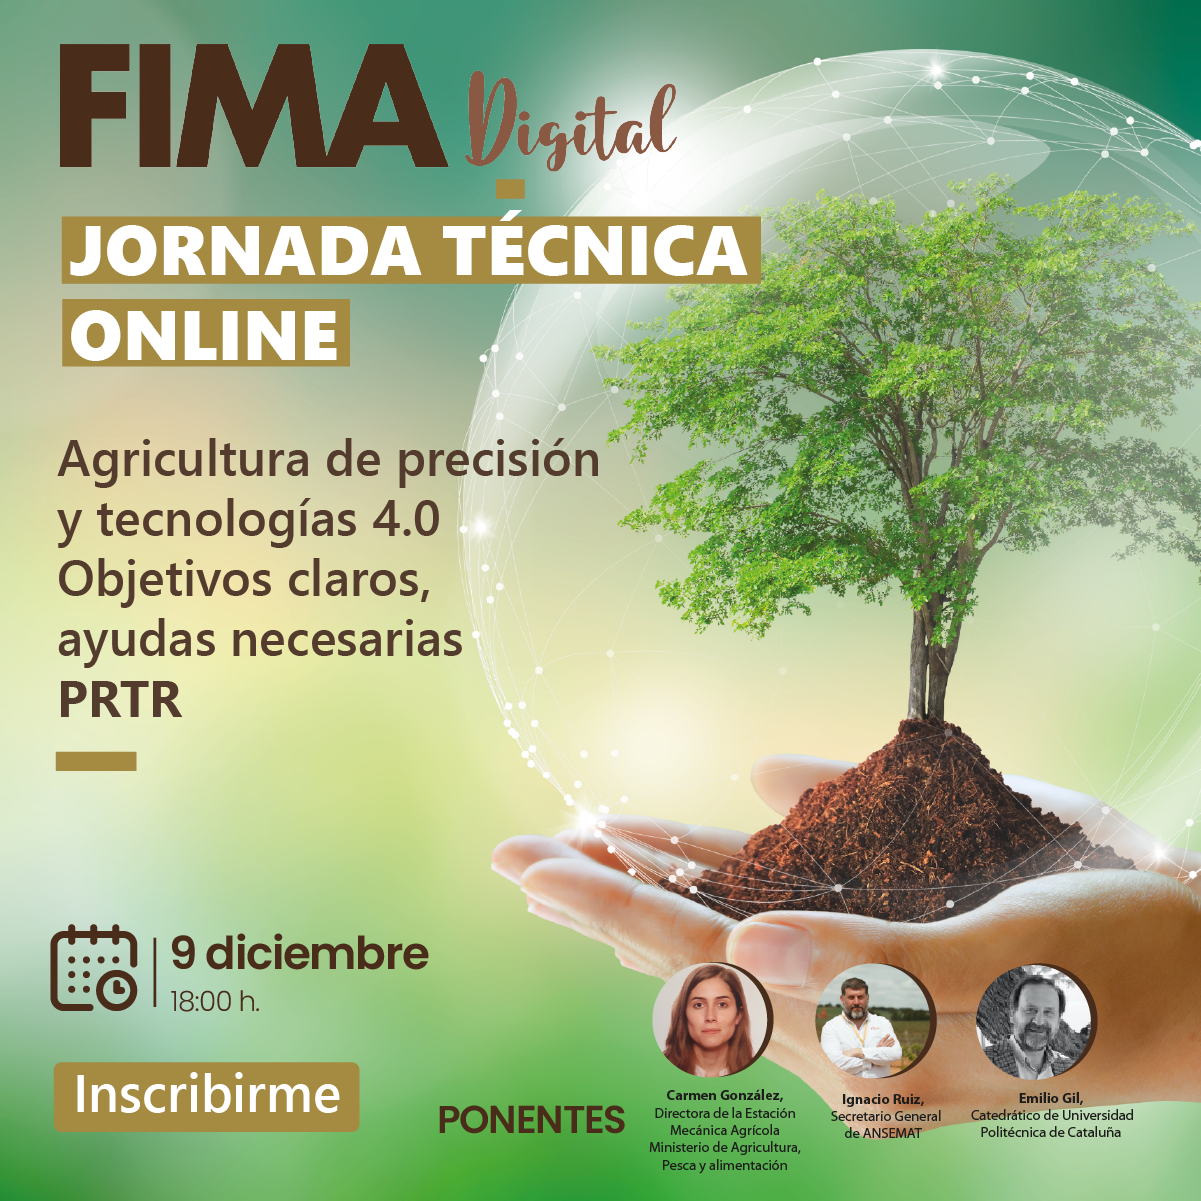 FIMA digital, se centra en la agricultura de precisión y las tecnologías 4.0, dentro del PRTR, como eje central de su jornada digital